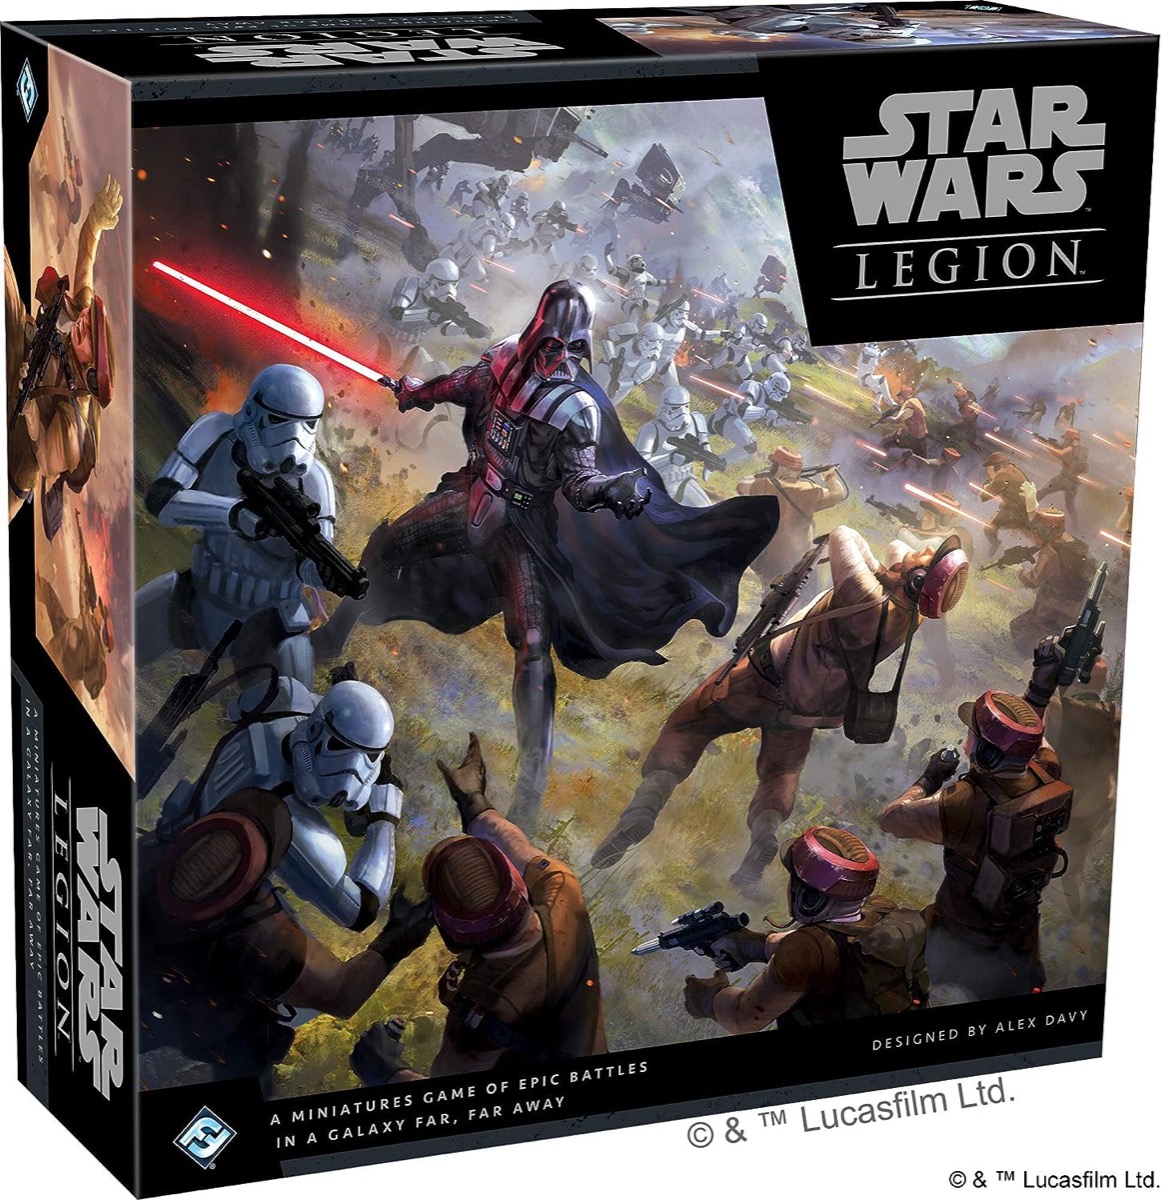 Box art depicting a Light Side vs Dark Side battle in Star Wars Legion